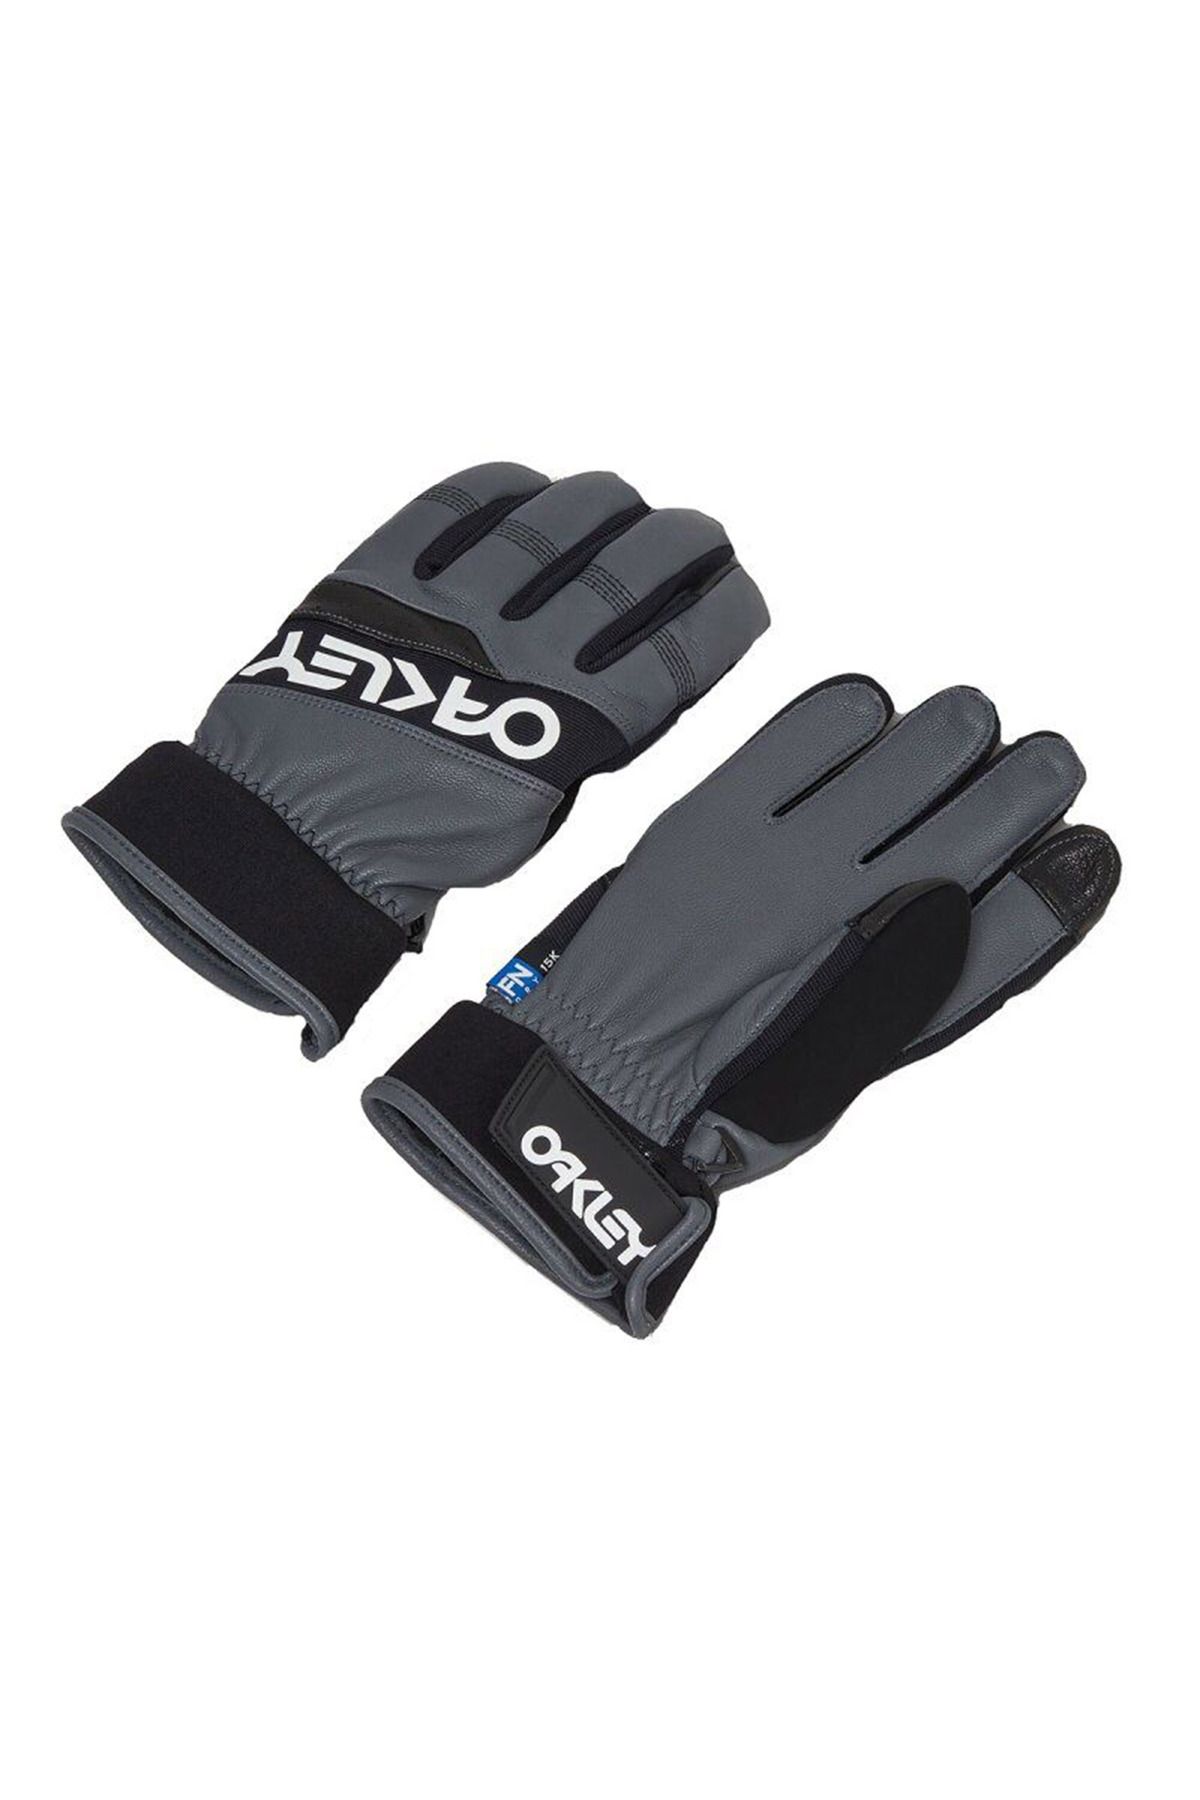 Oakley Factory Winter Gloves 2.0 Erkek Eldiven